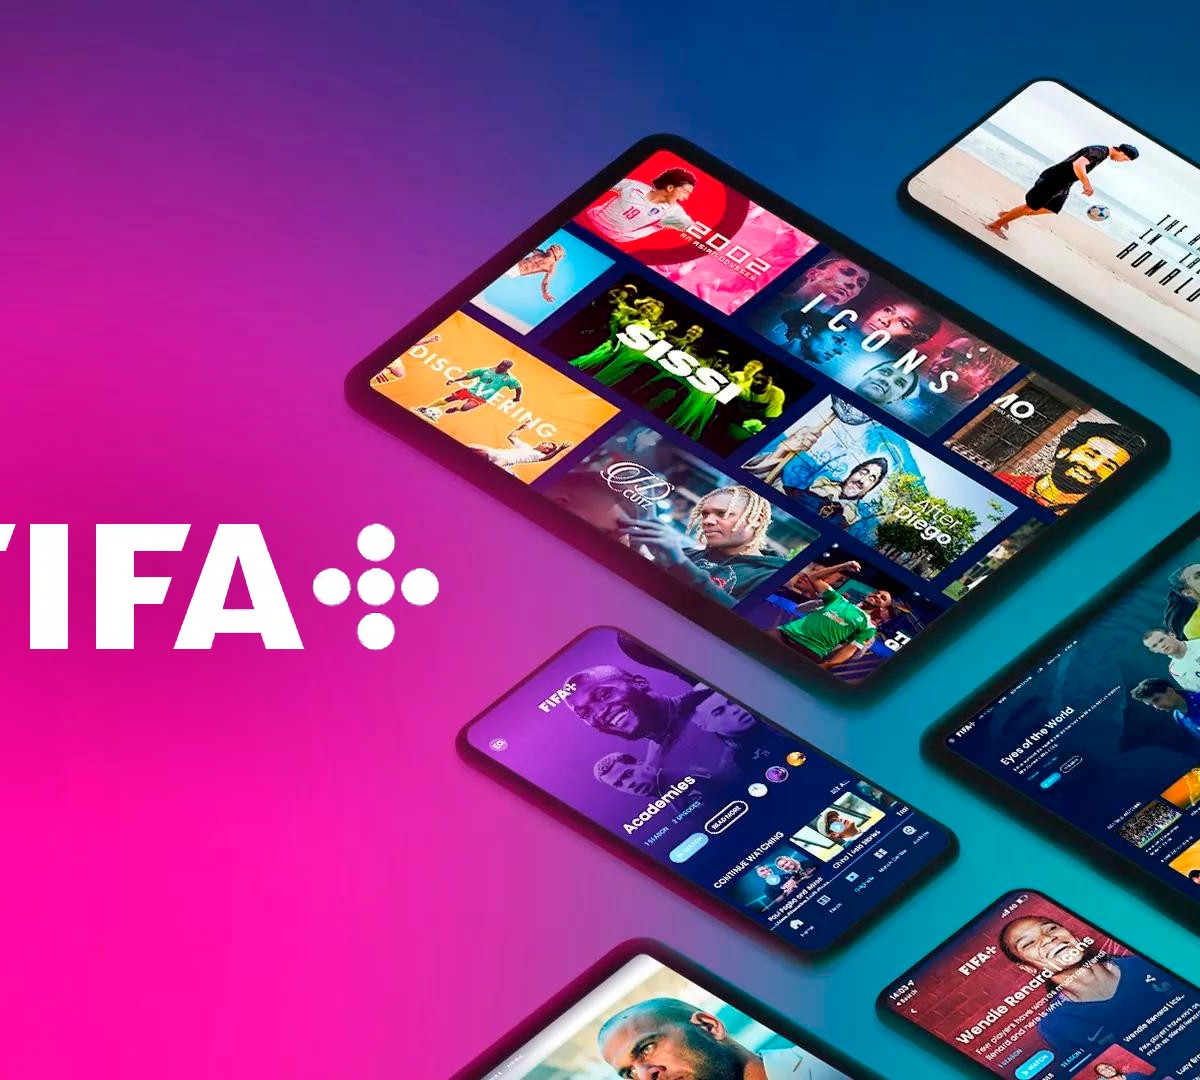 FIFA Plus chega ao Google TV e ao Android TV com os jogos da Copa